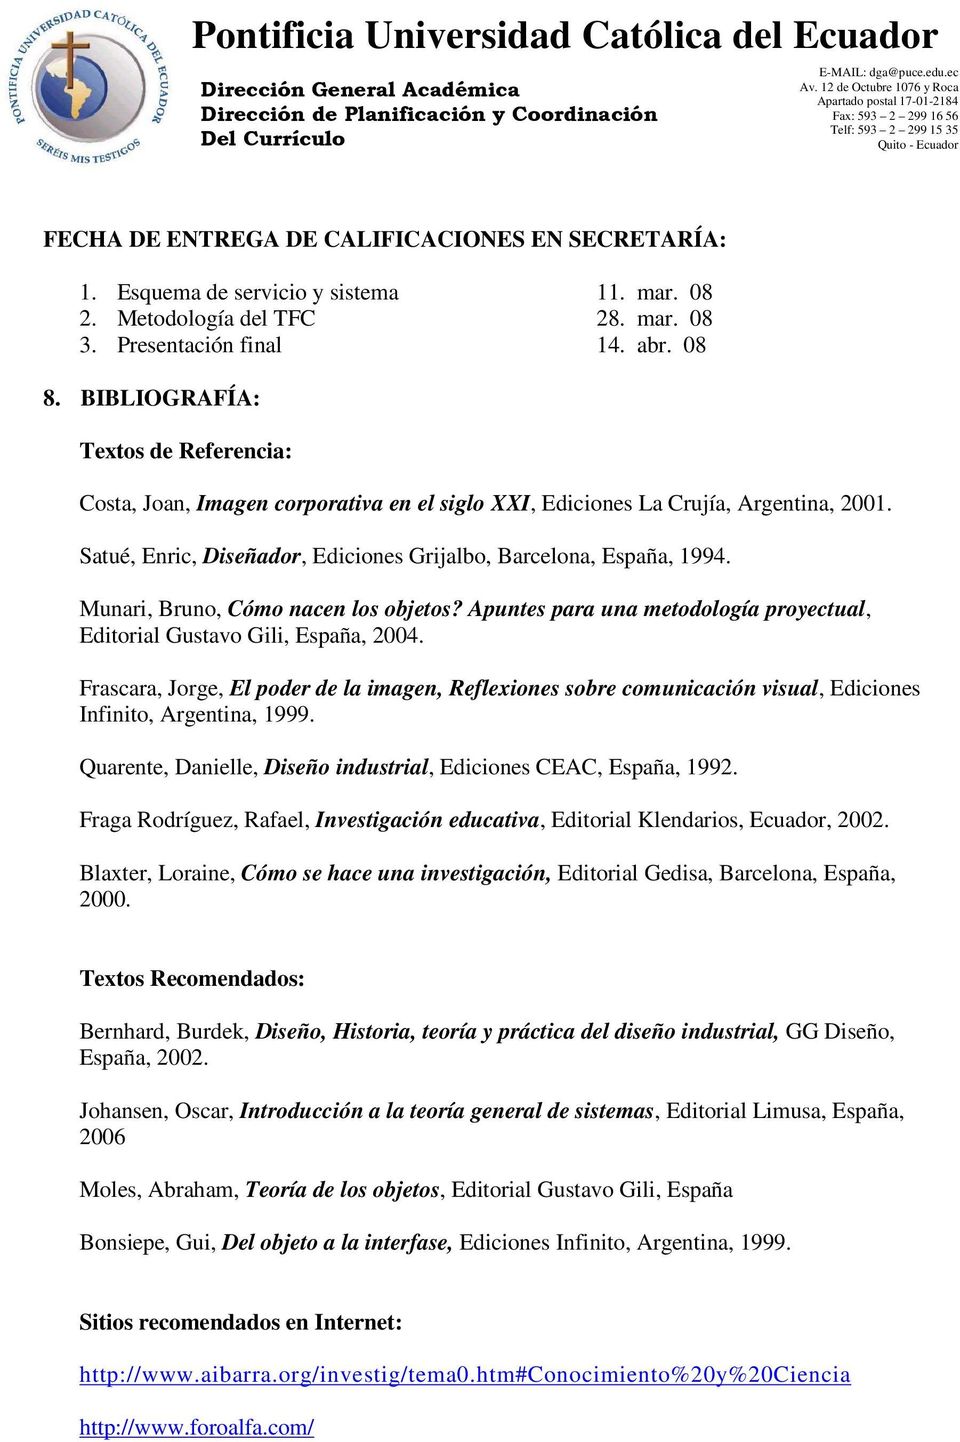 Munari, Bruno, Cómo nacen los objetos? Apuntes para una metodología proyectual, Editorial Gustavo Gili, España, 2004.